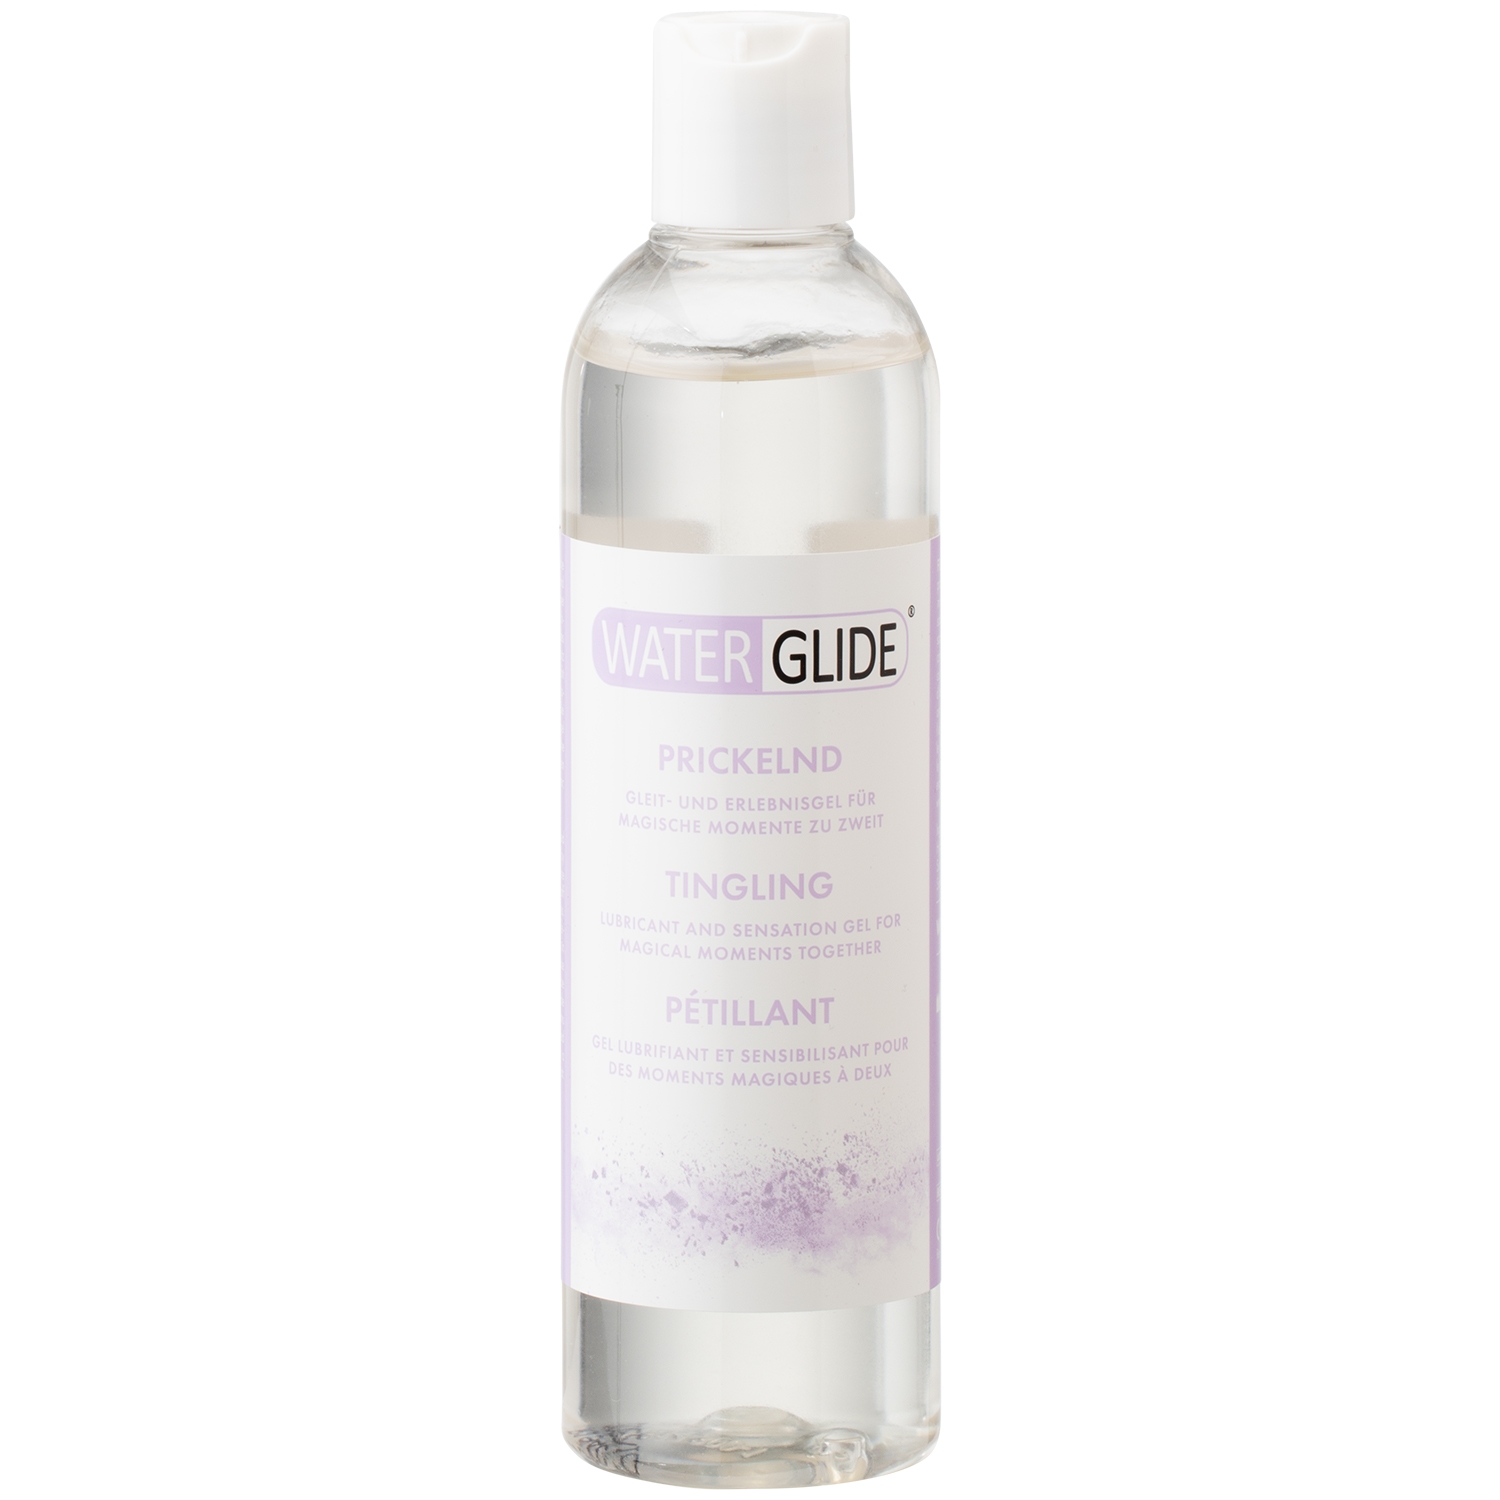 Waterglide Tingling Stimulerende Glidecreme 300 ml - Clear